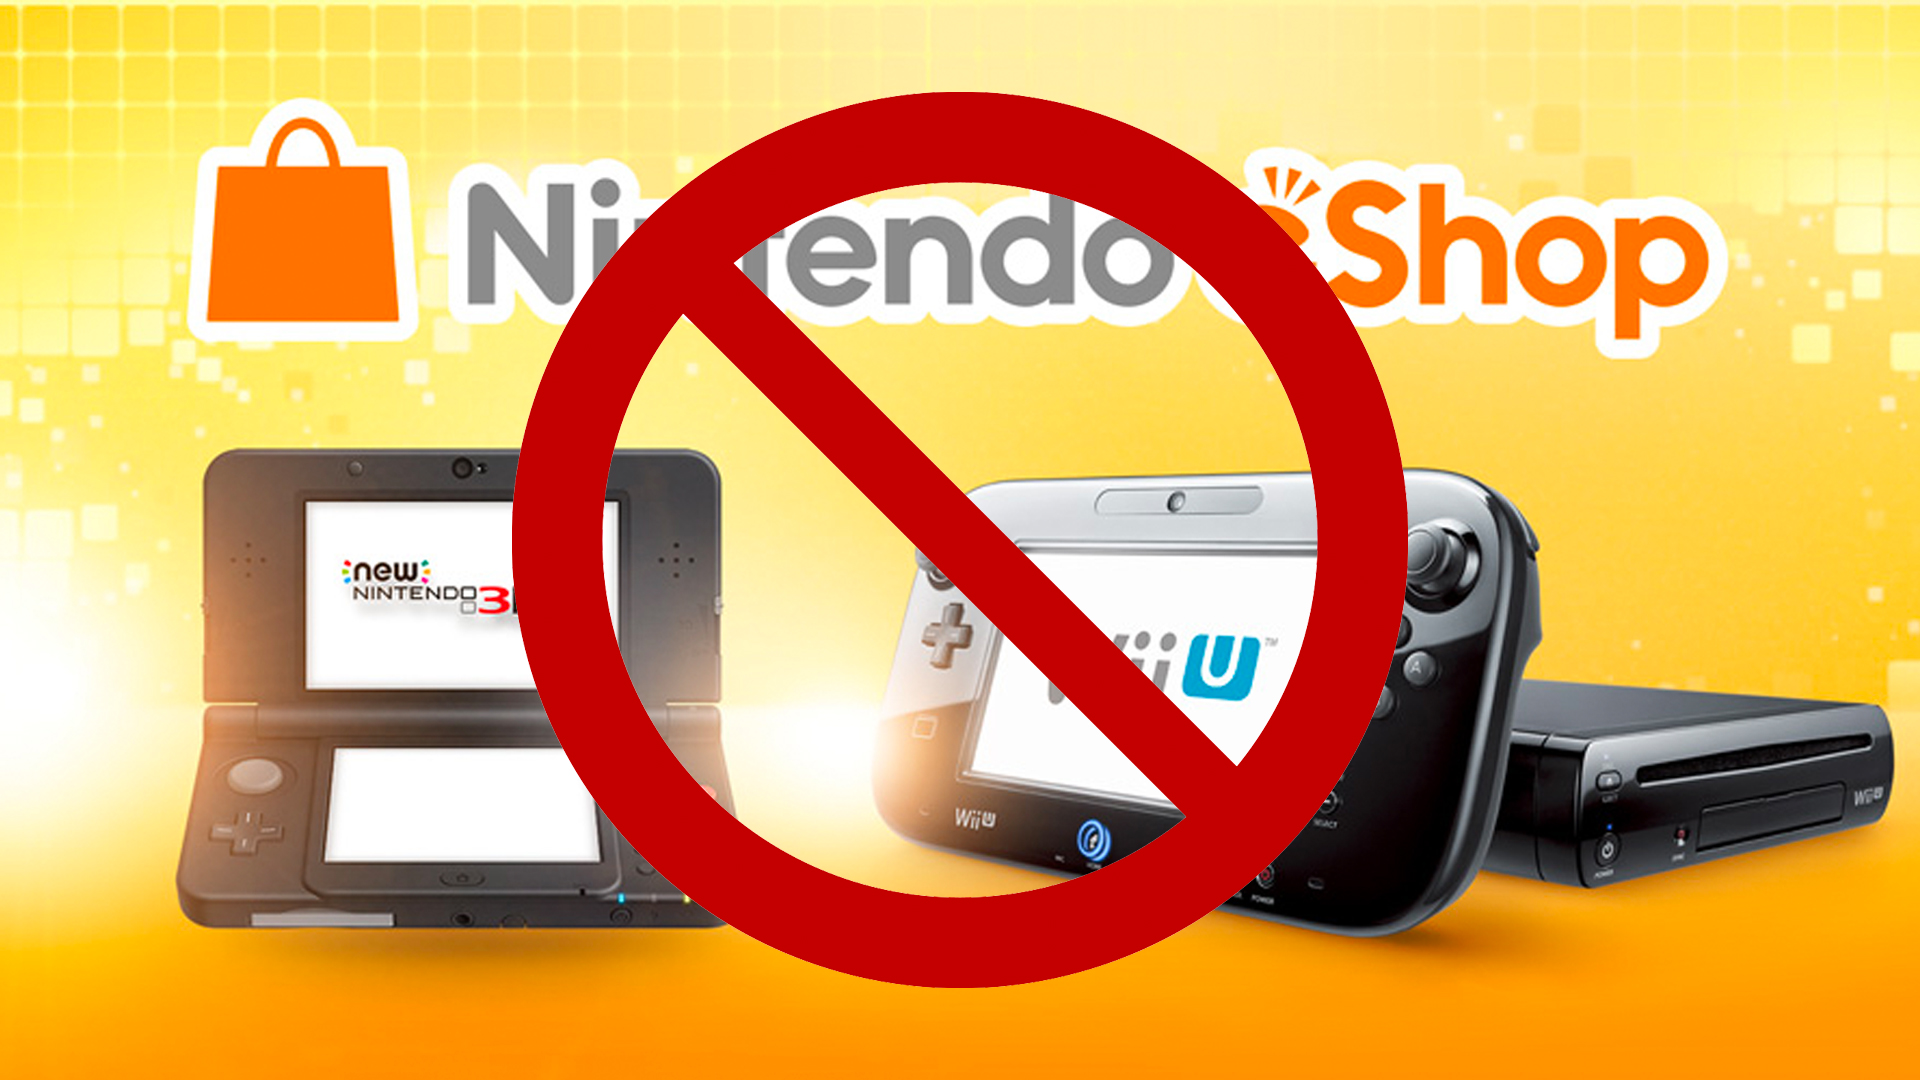 Saiba como é a eShop do Wii U